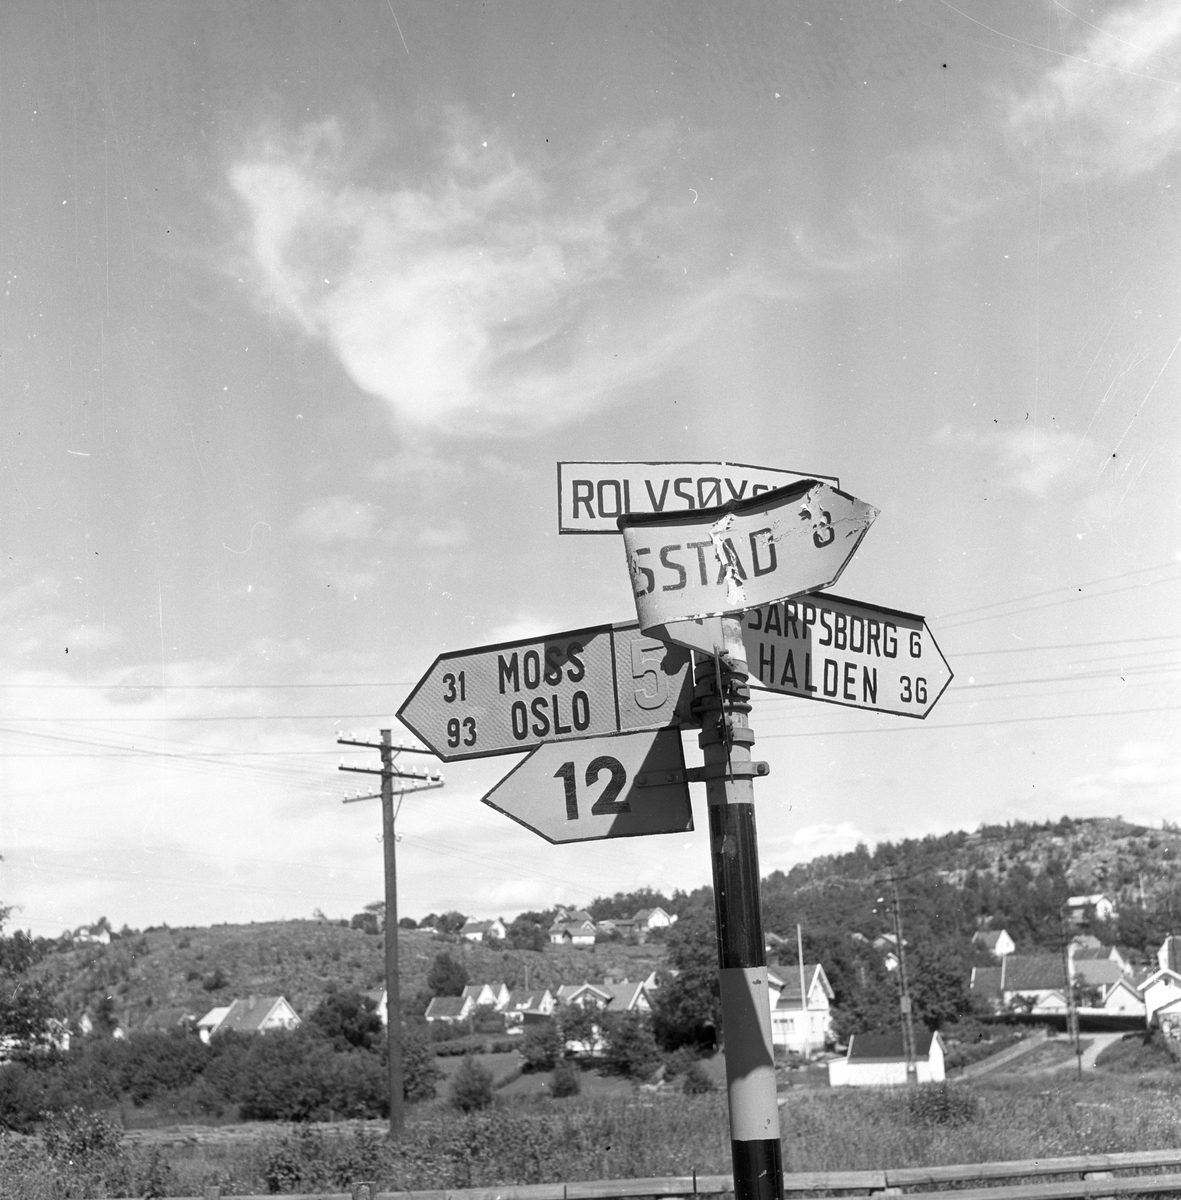 Langs Riksvei 1står det et trafikkskilt ved Rolvsøy som henviser til Moss, Sarpsborg, Halden etc. Fotografert 7. juli 1958.